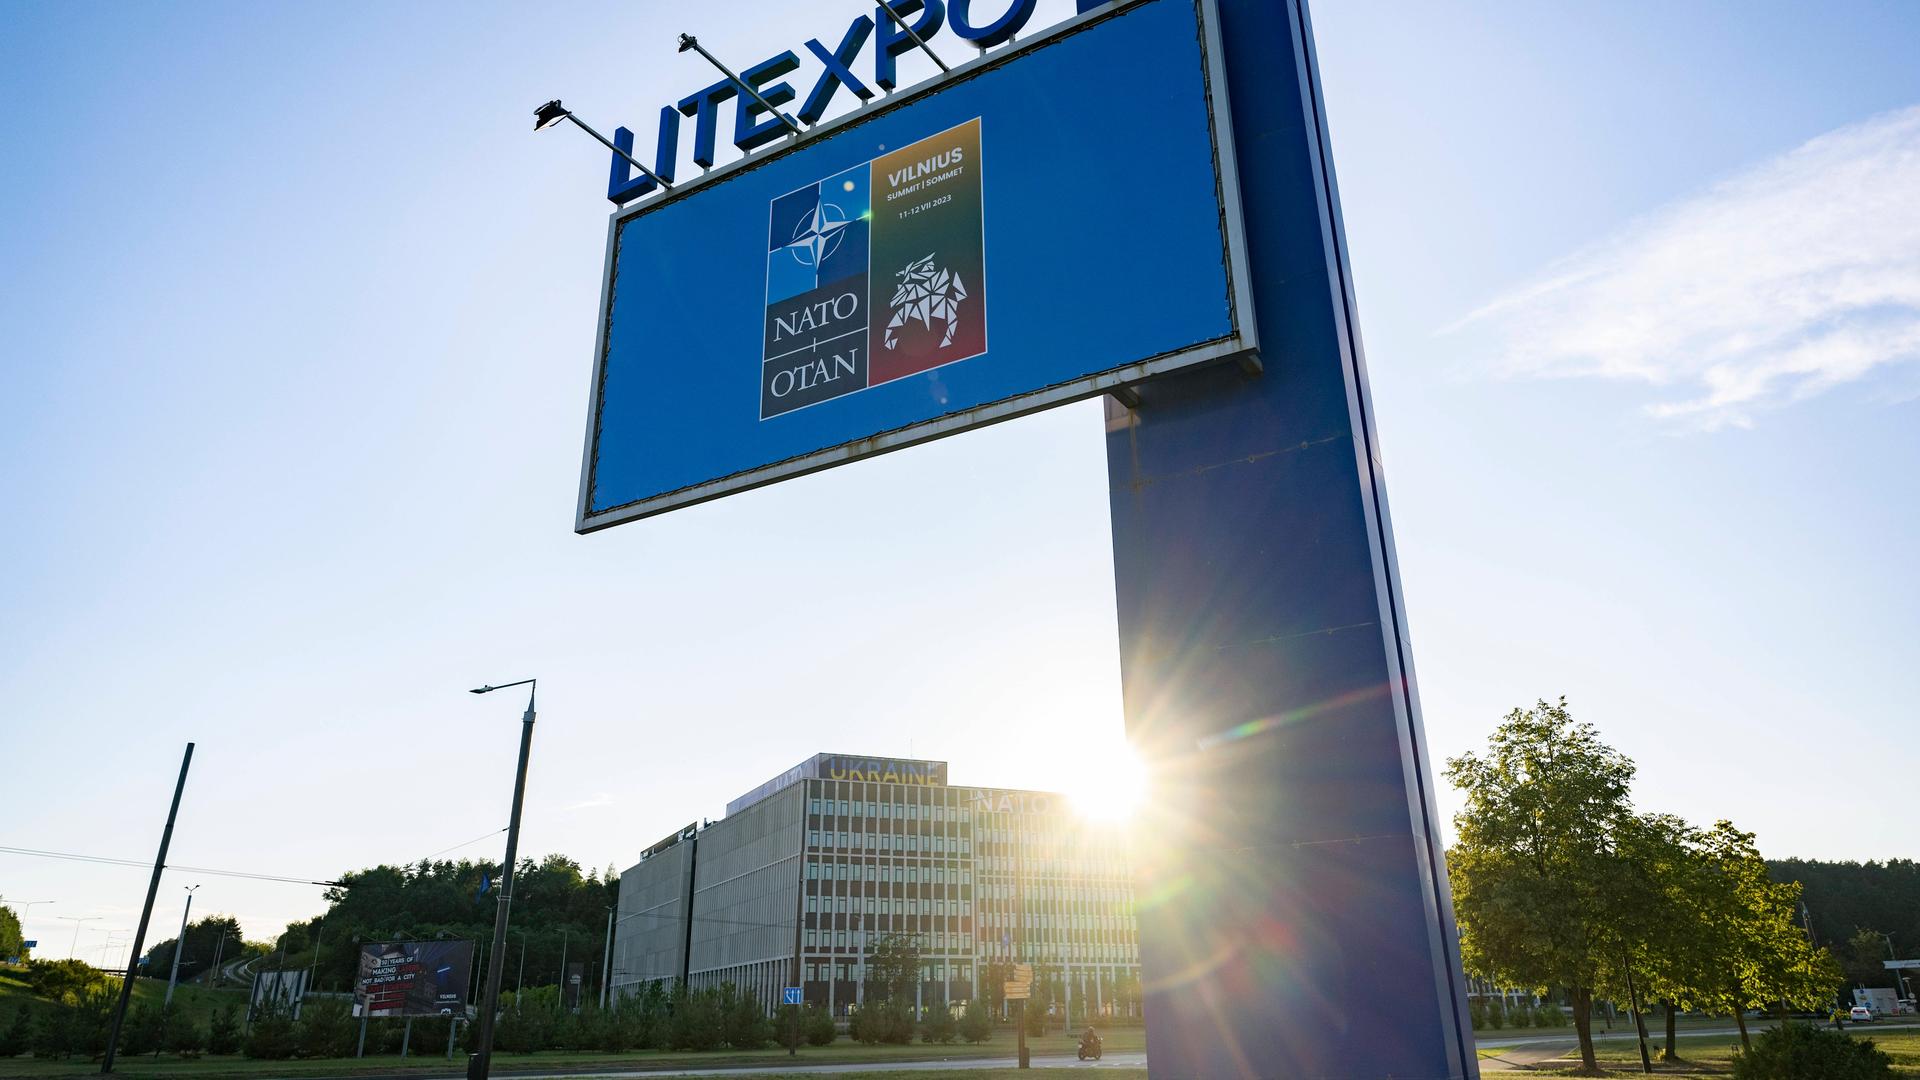 Ein Schild kündigt den NATO-Gipfel in Vilnius an. Dahinter das Gelände der Litexpo, auf dem das Treffen stattfinden wird.